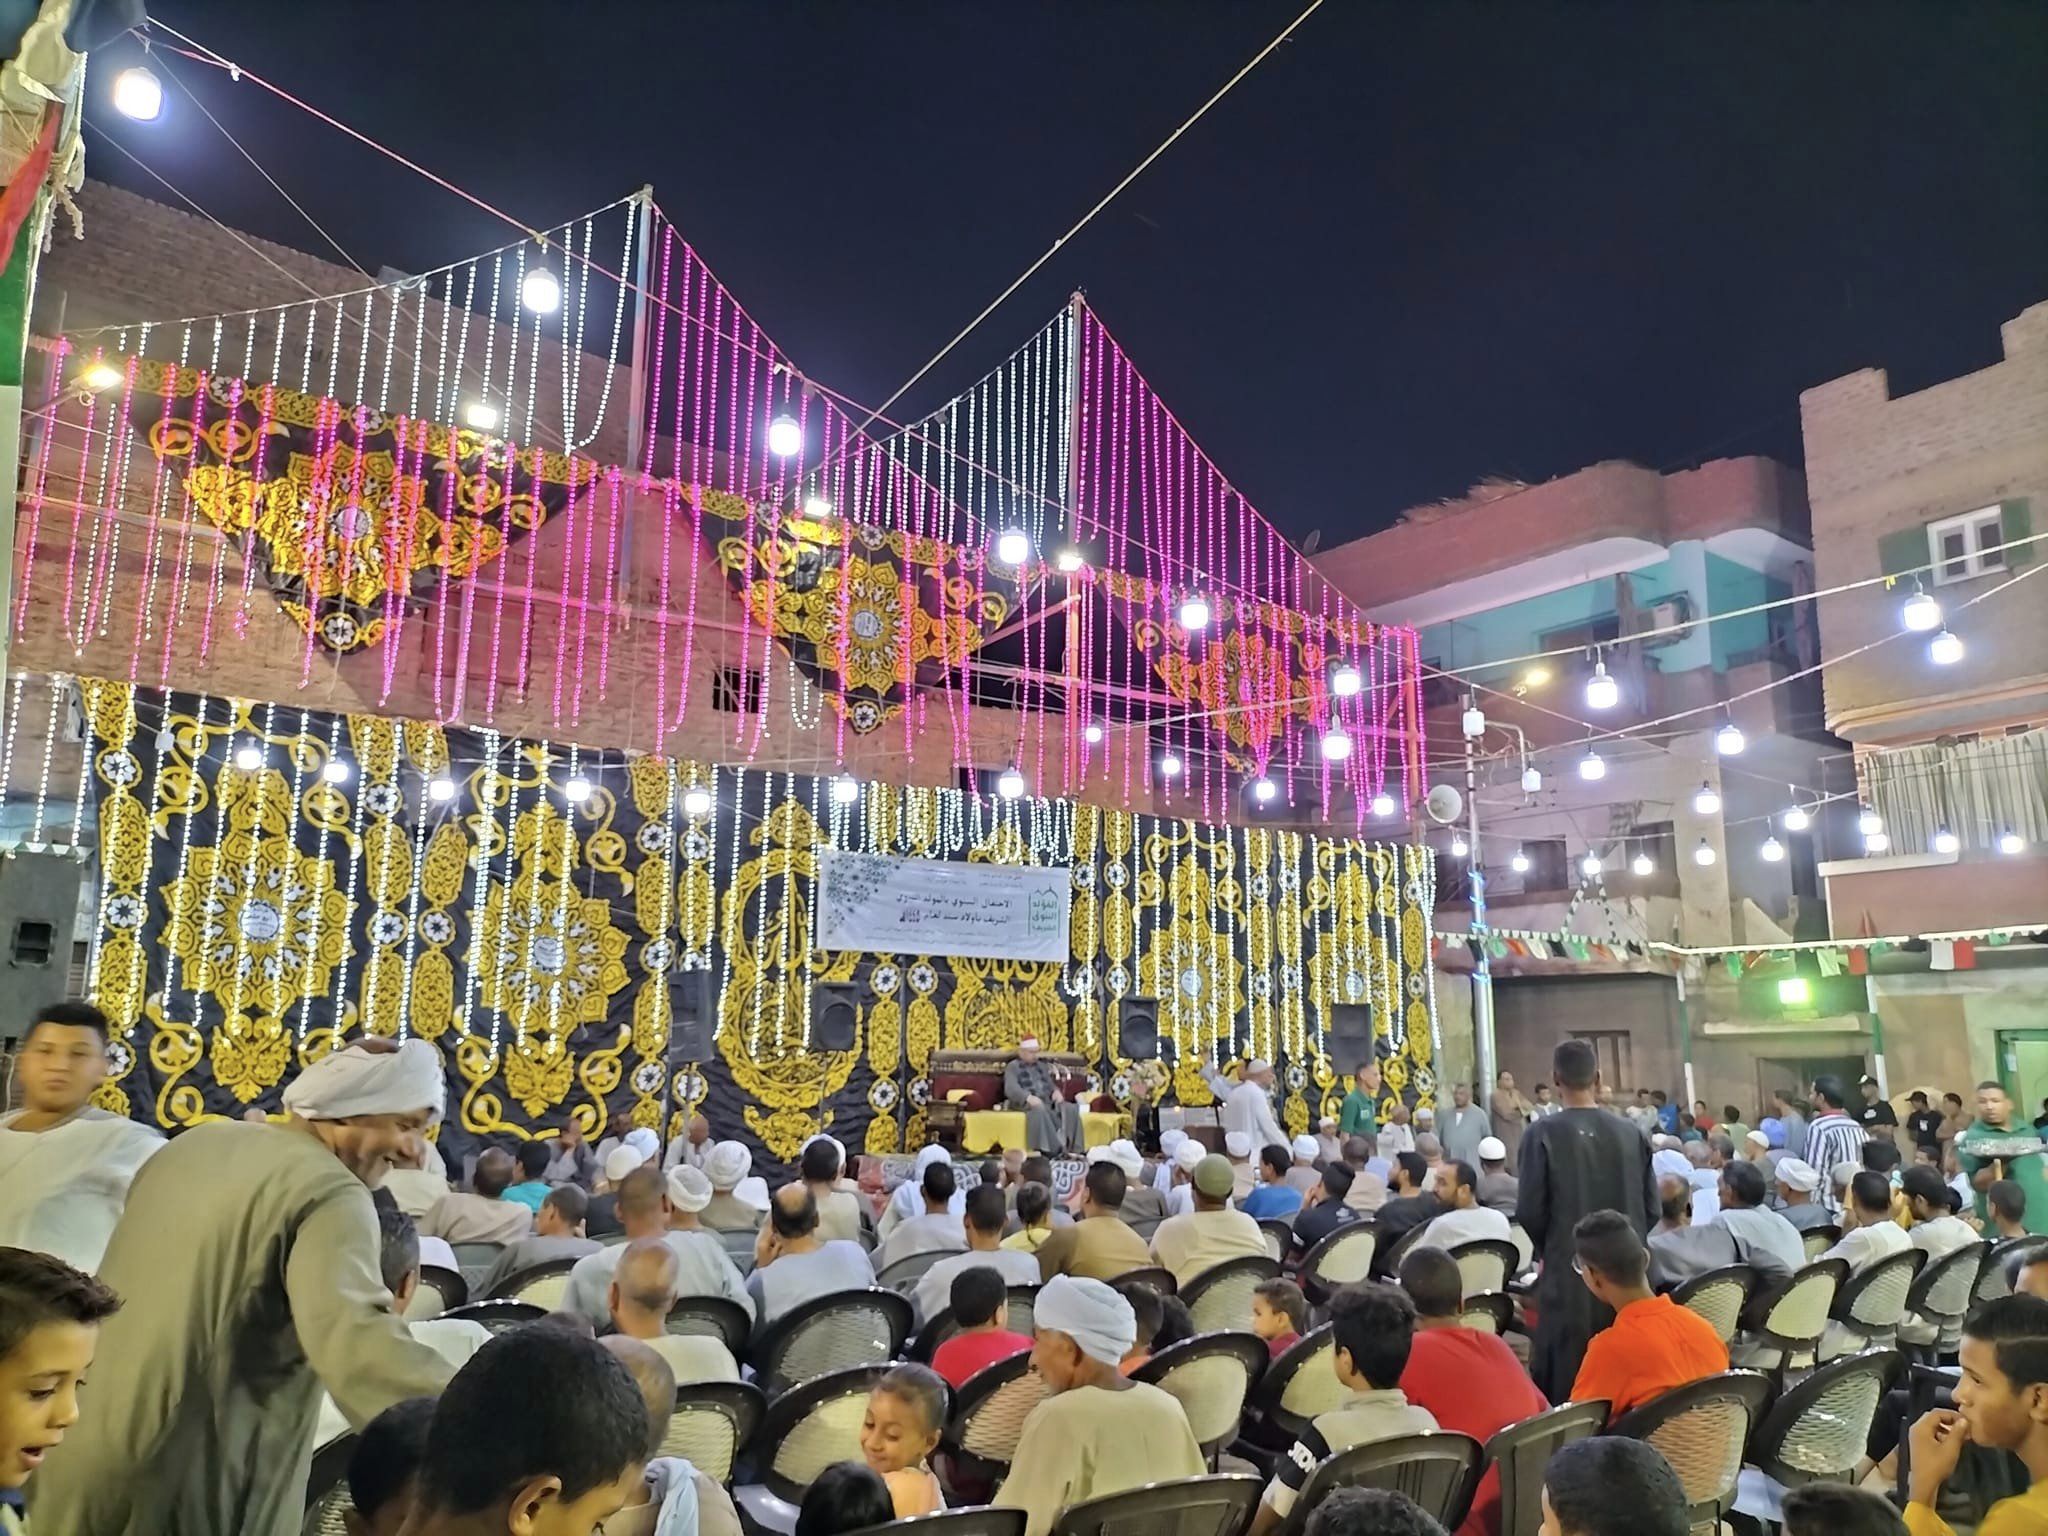 قرية الرزيقات بالأقصر يحتفلون بالمولد النبوى بتجمع المئات لسماع القرآن الكريم